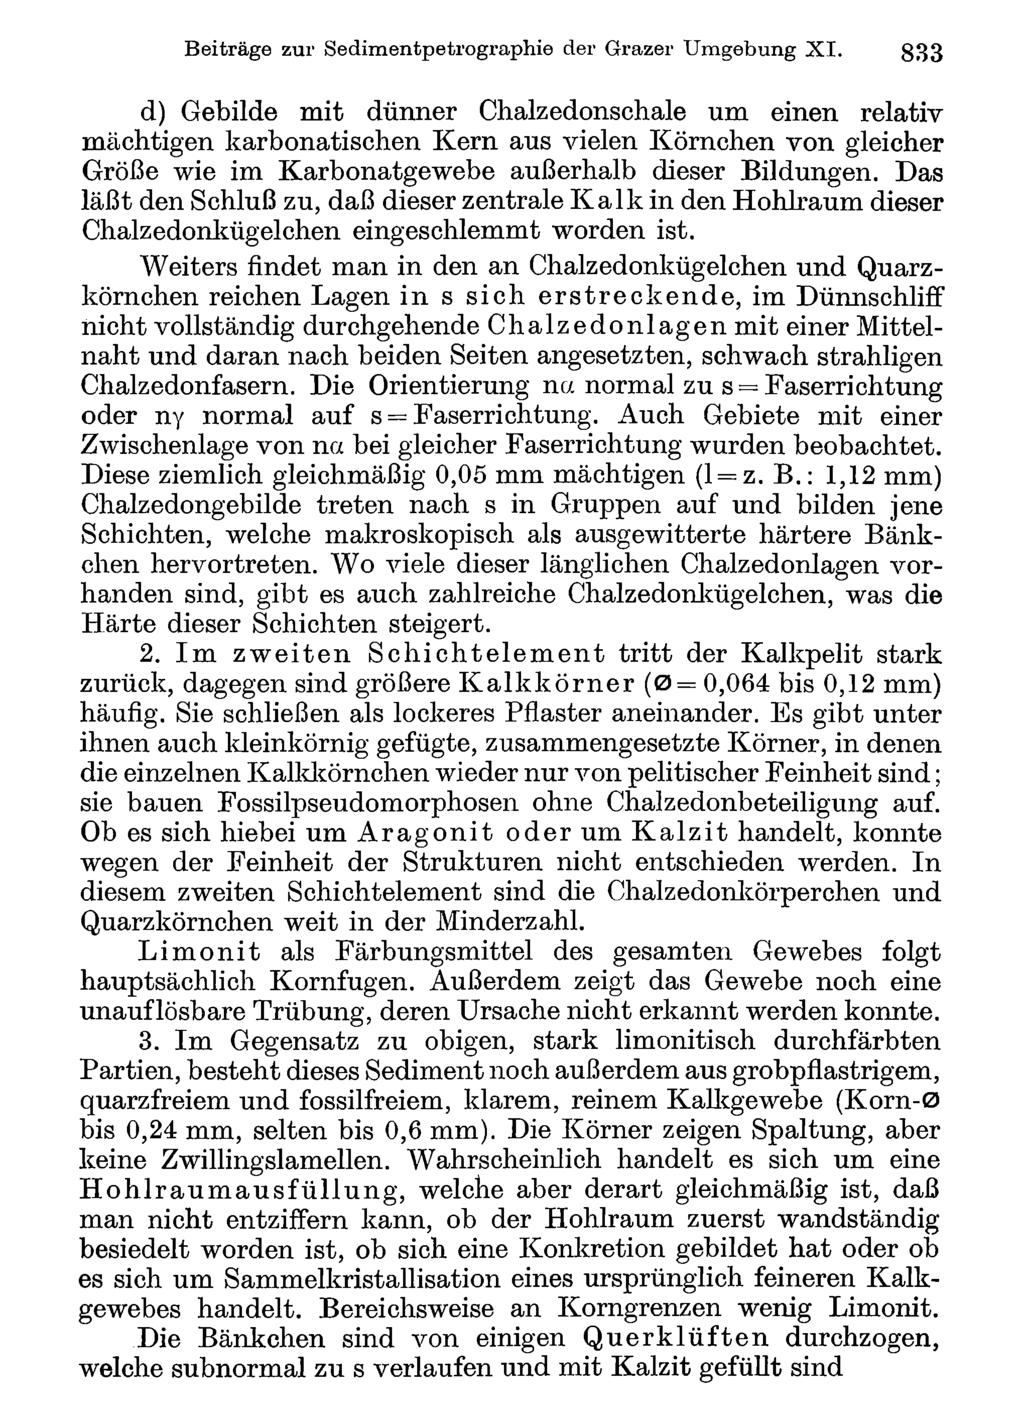 Beiträge Akademie zur Sedimentpetrographie d. Wissenschaften Wien; download der unter Grazer www.biologiezentrum.at Umgebung X I.